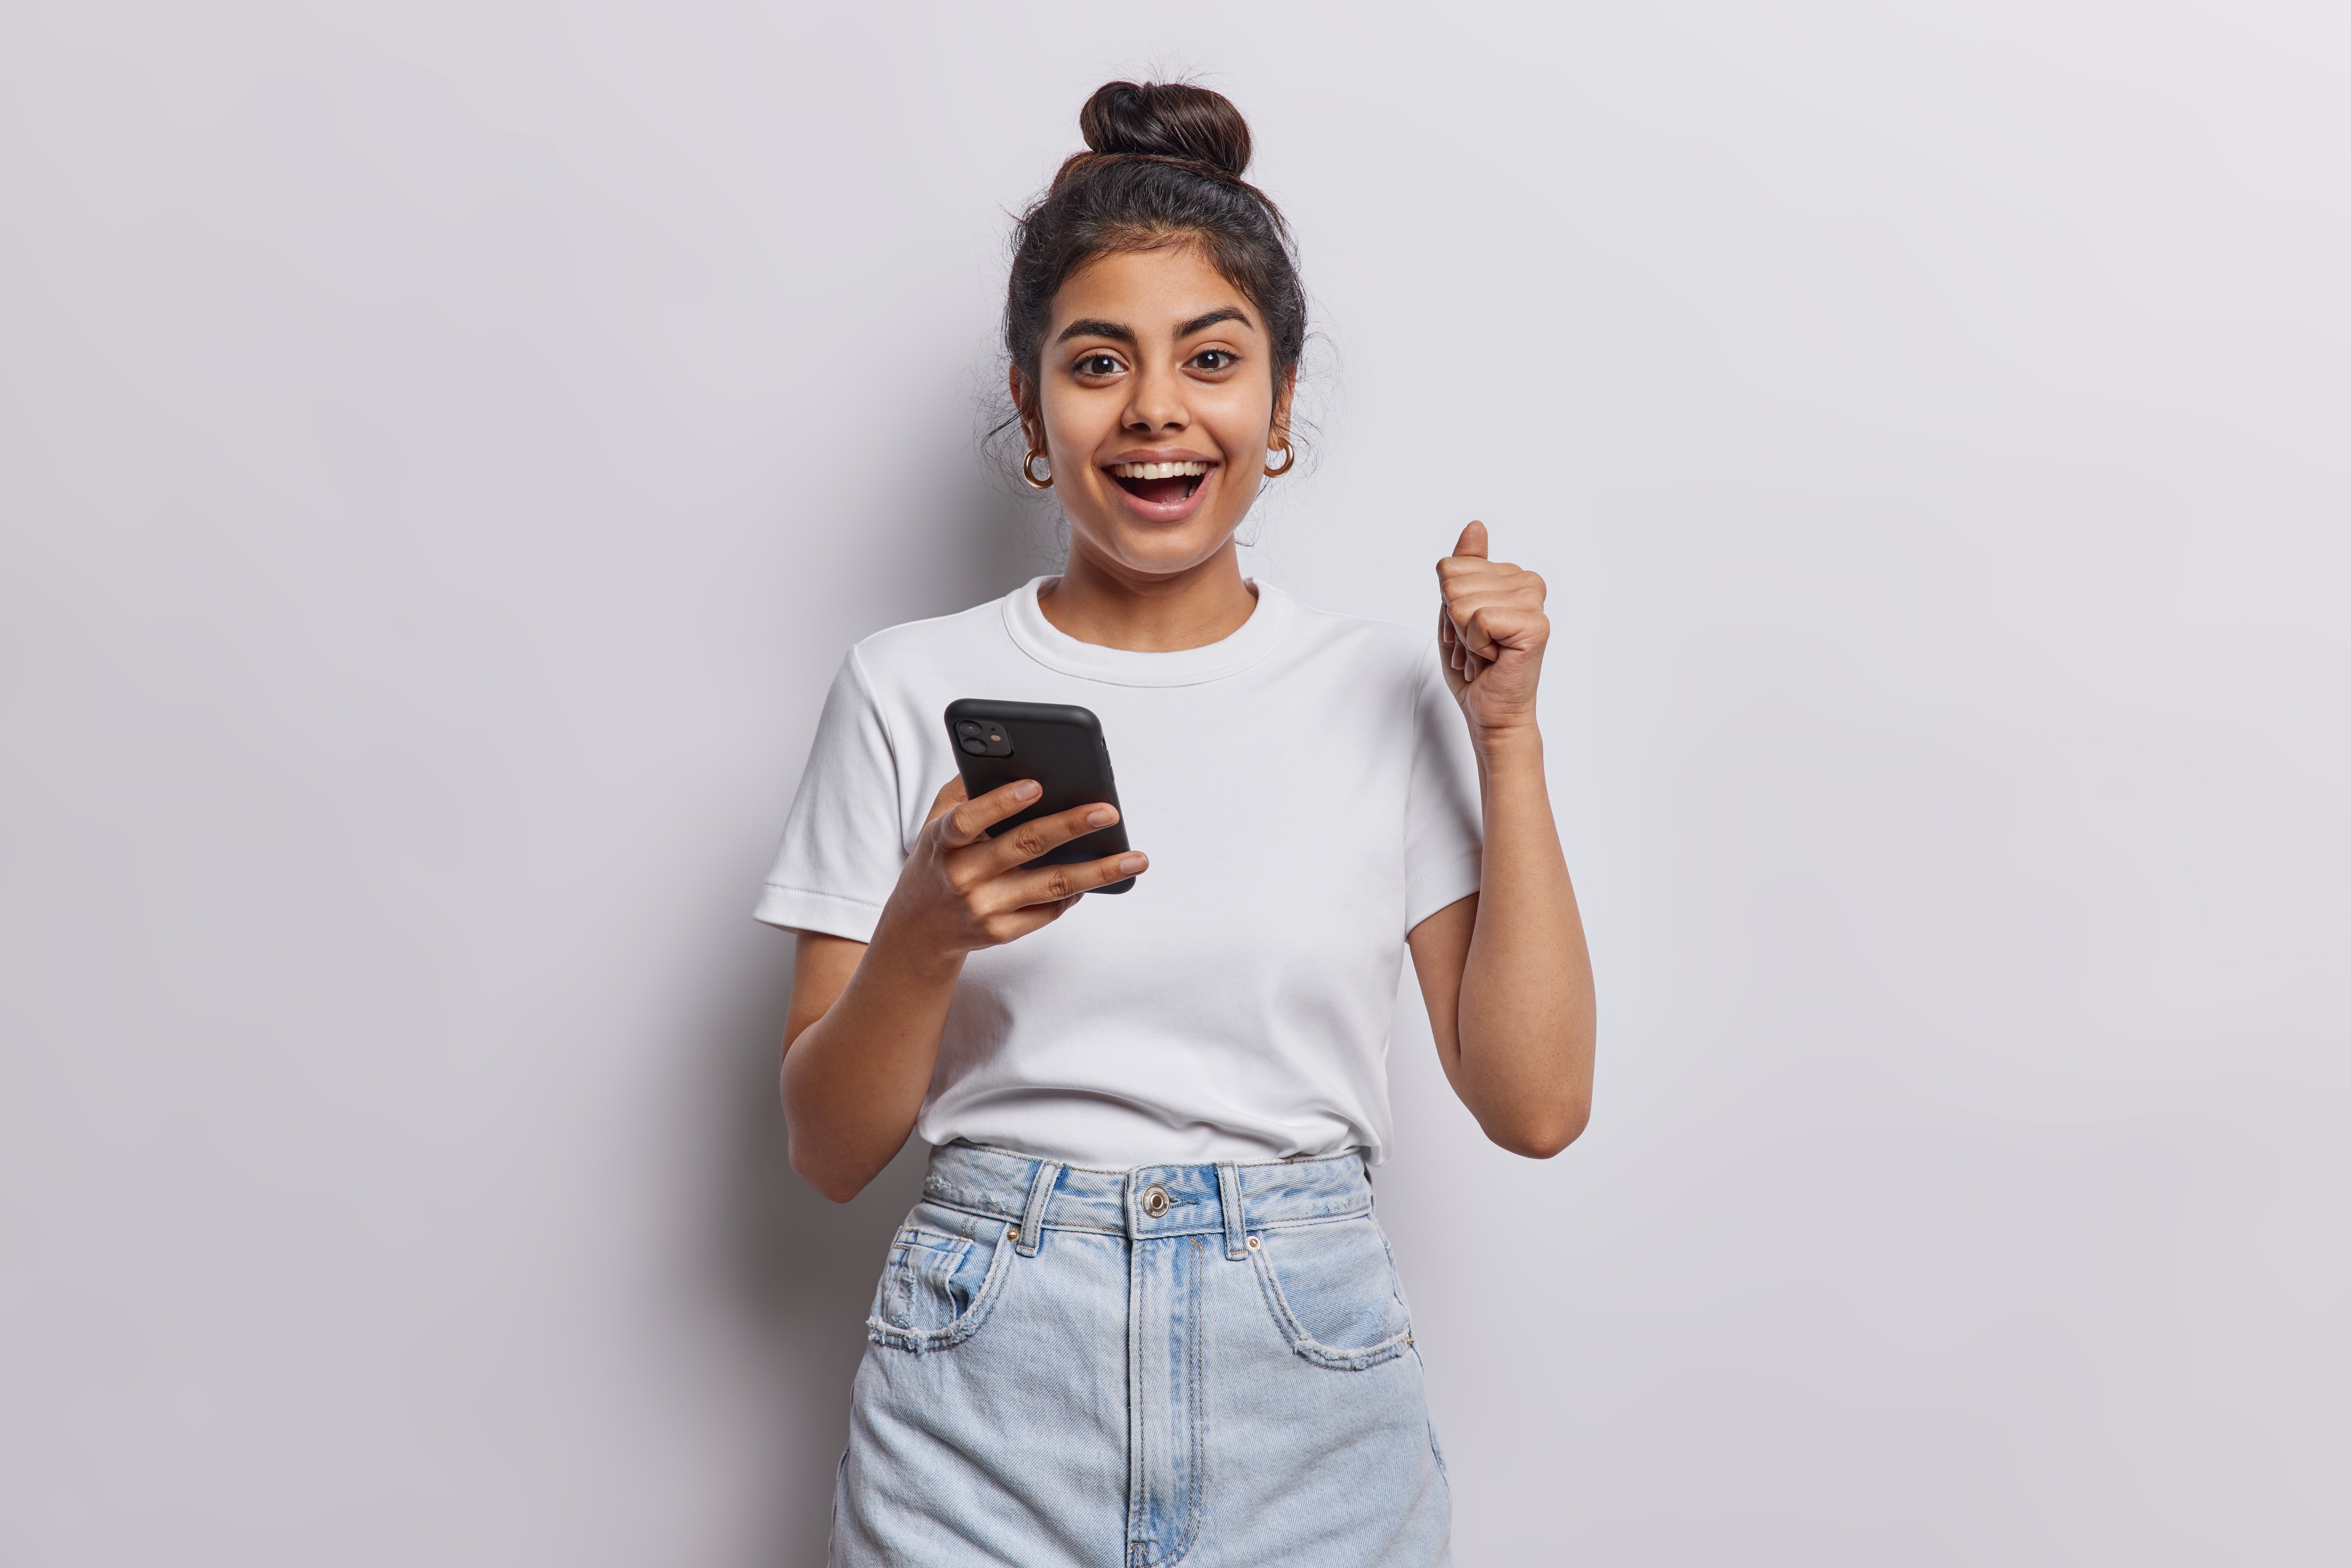 Jeune femme joyeuse montrant un pouce levé alors qu'elle est sur son téléphone | Source : Shutterstock